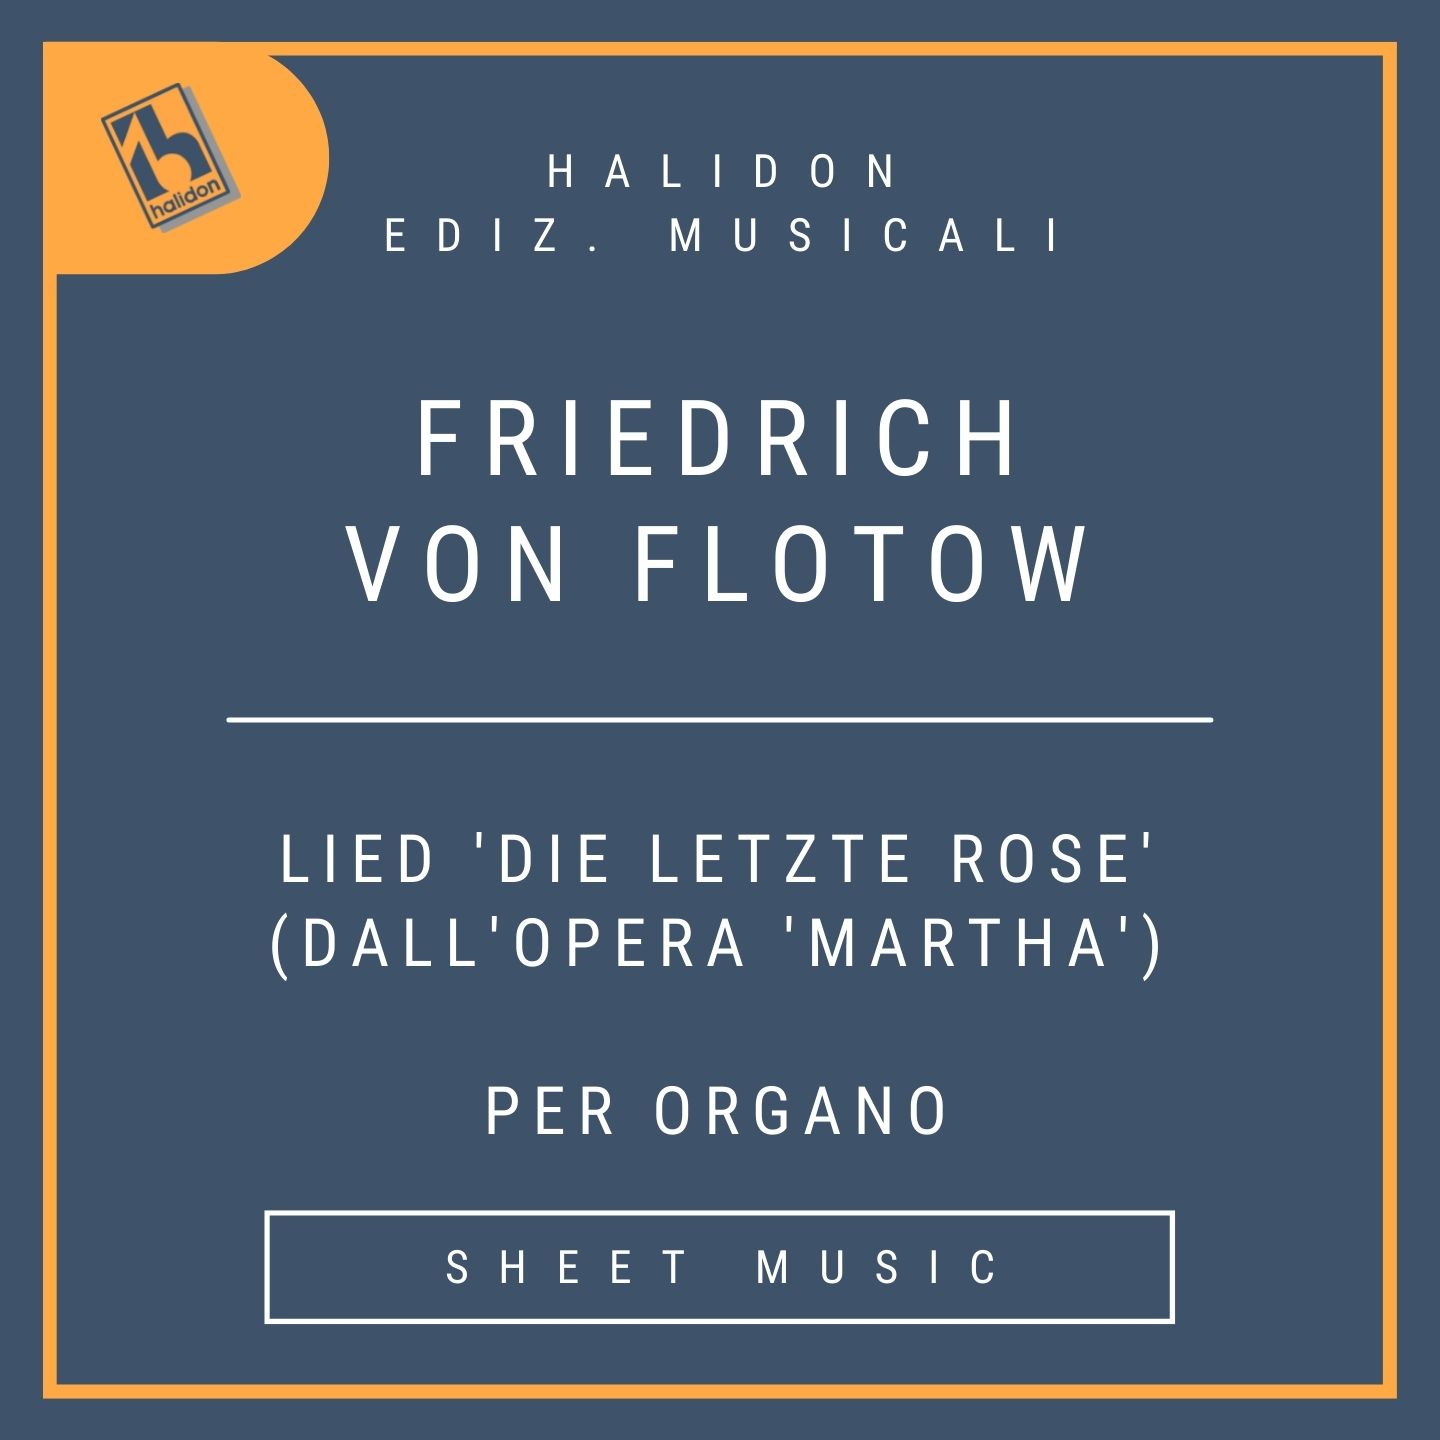 Friedrich von Flotow - Lied 'Die letzte Rose' (dall'opera 'Martha')